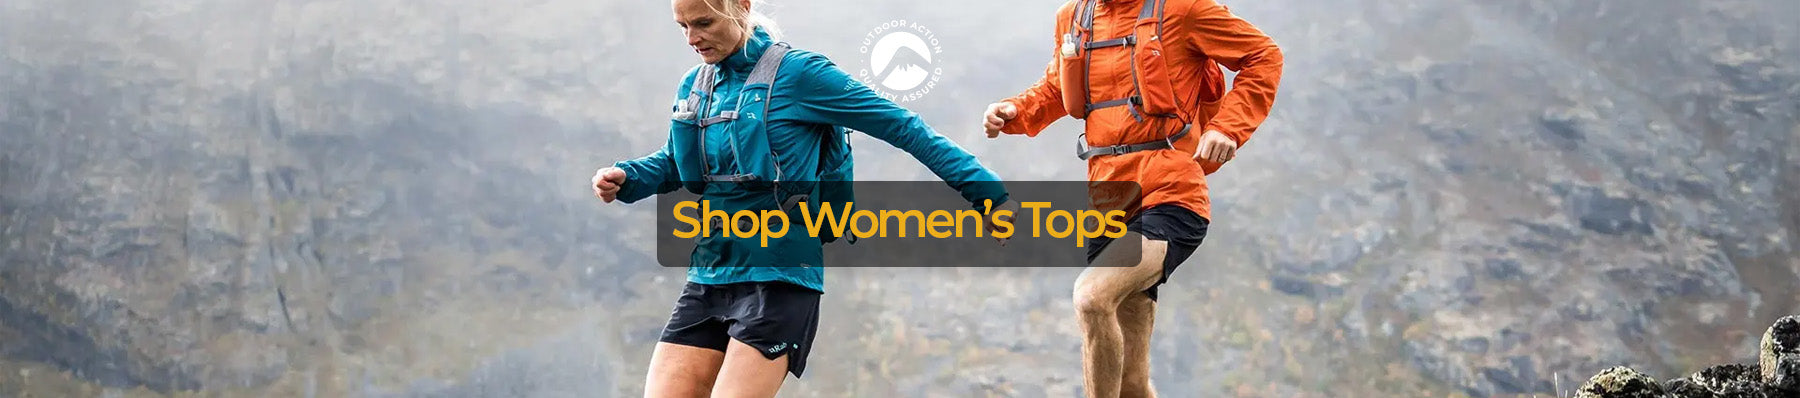 Shop Women's Tops online at Outdoor Action